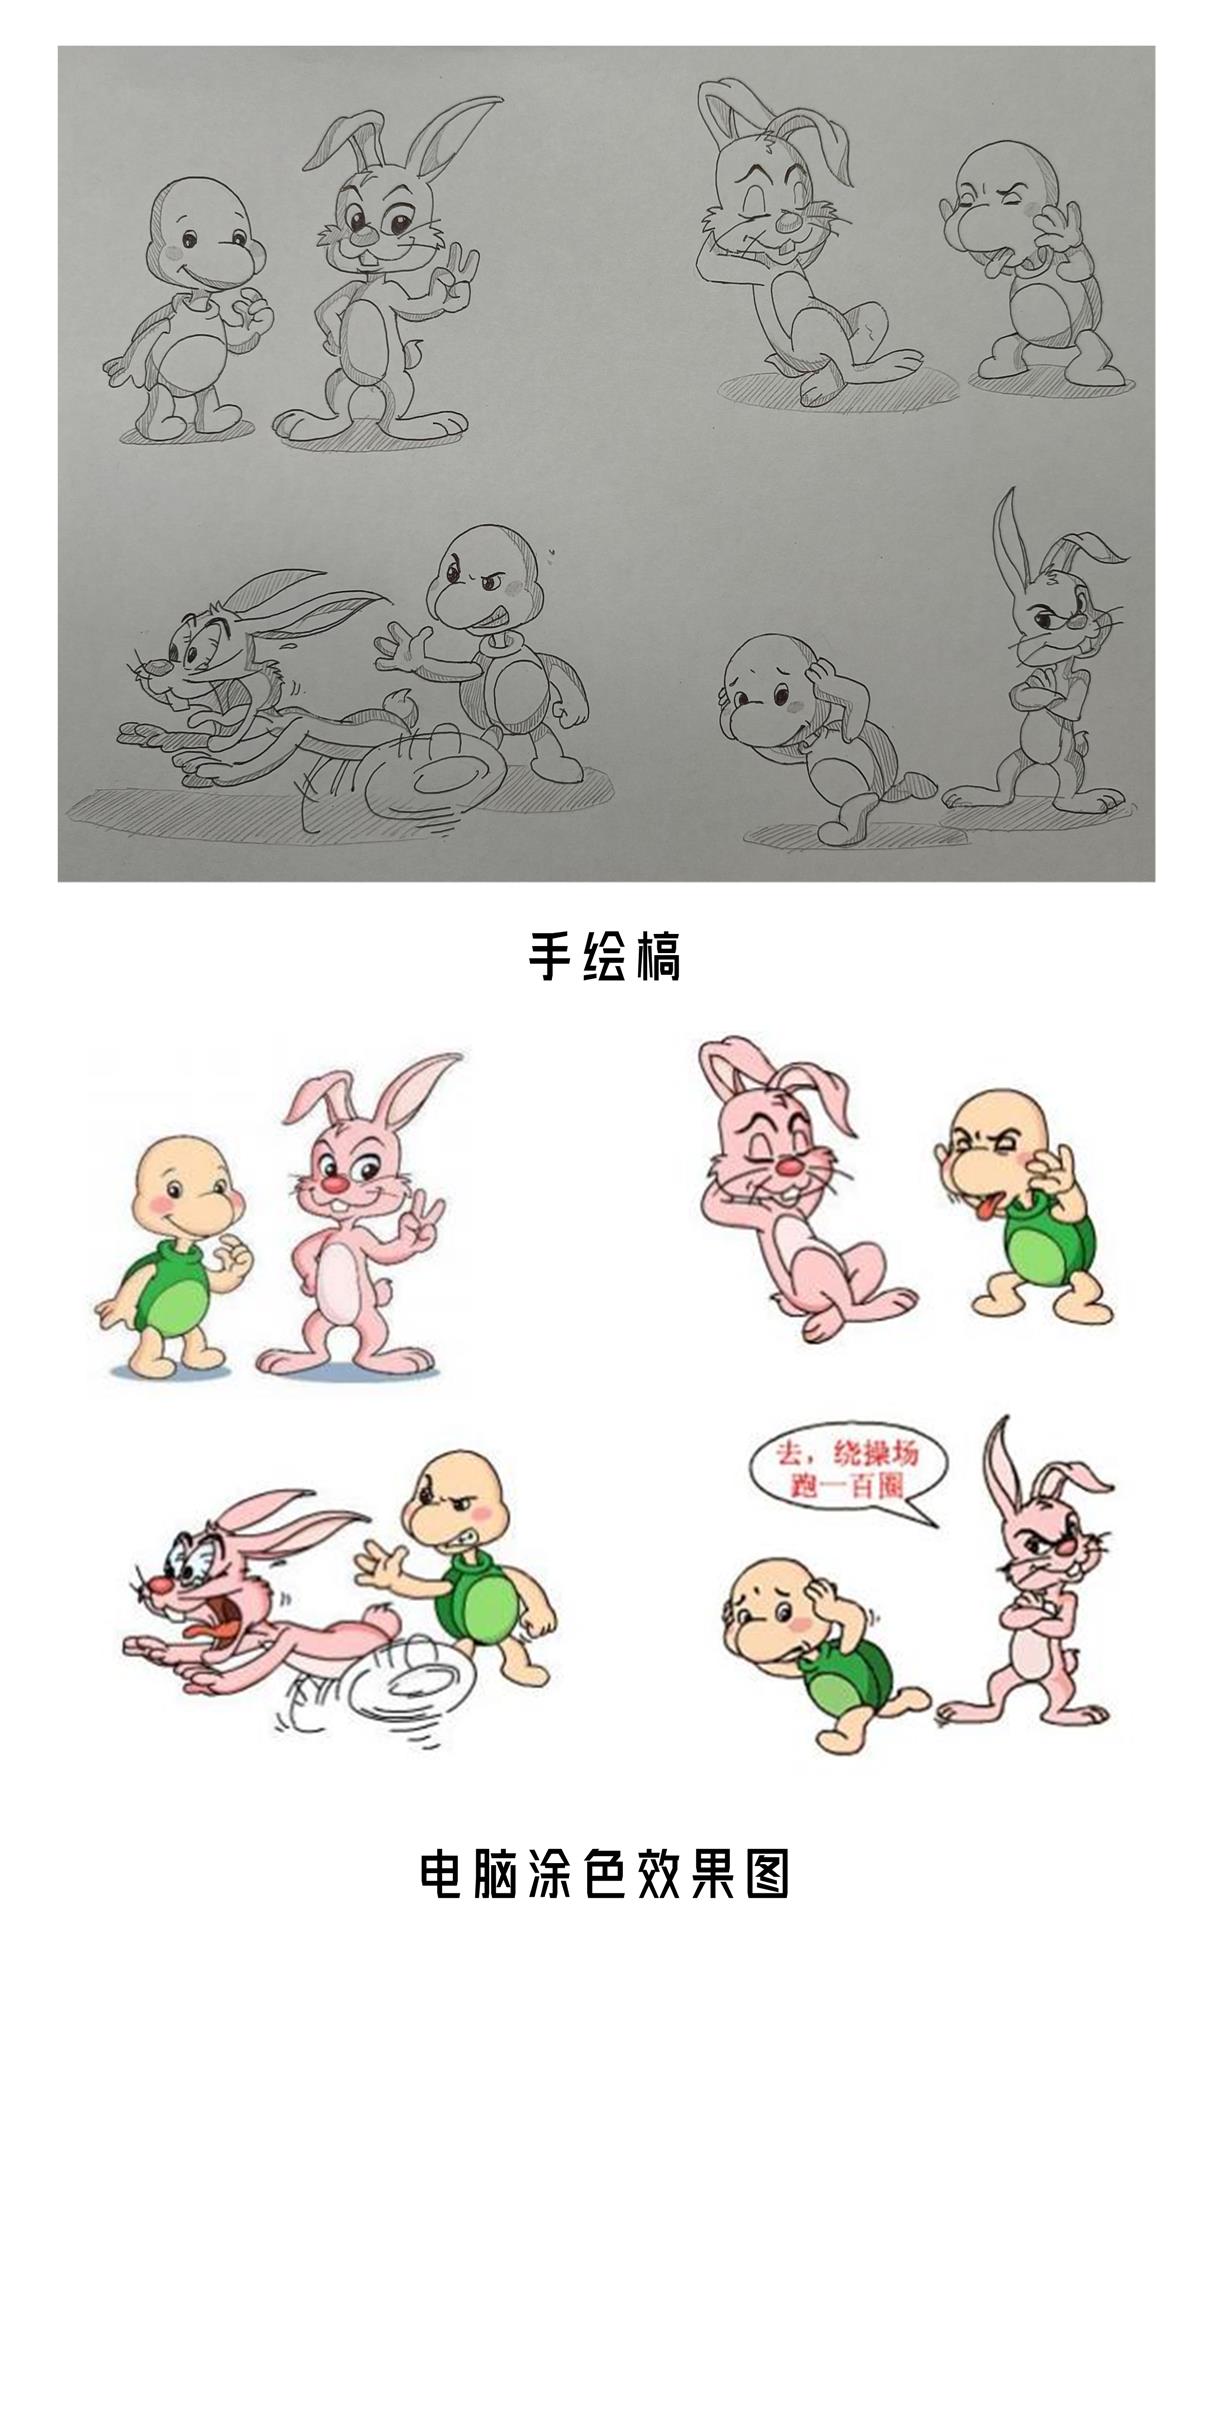 《兔子与乌龟》卡通插画系列